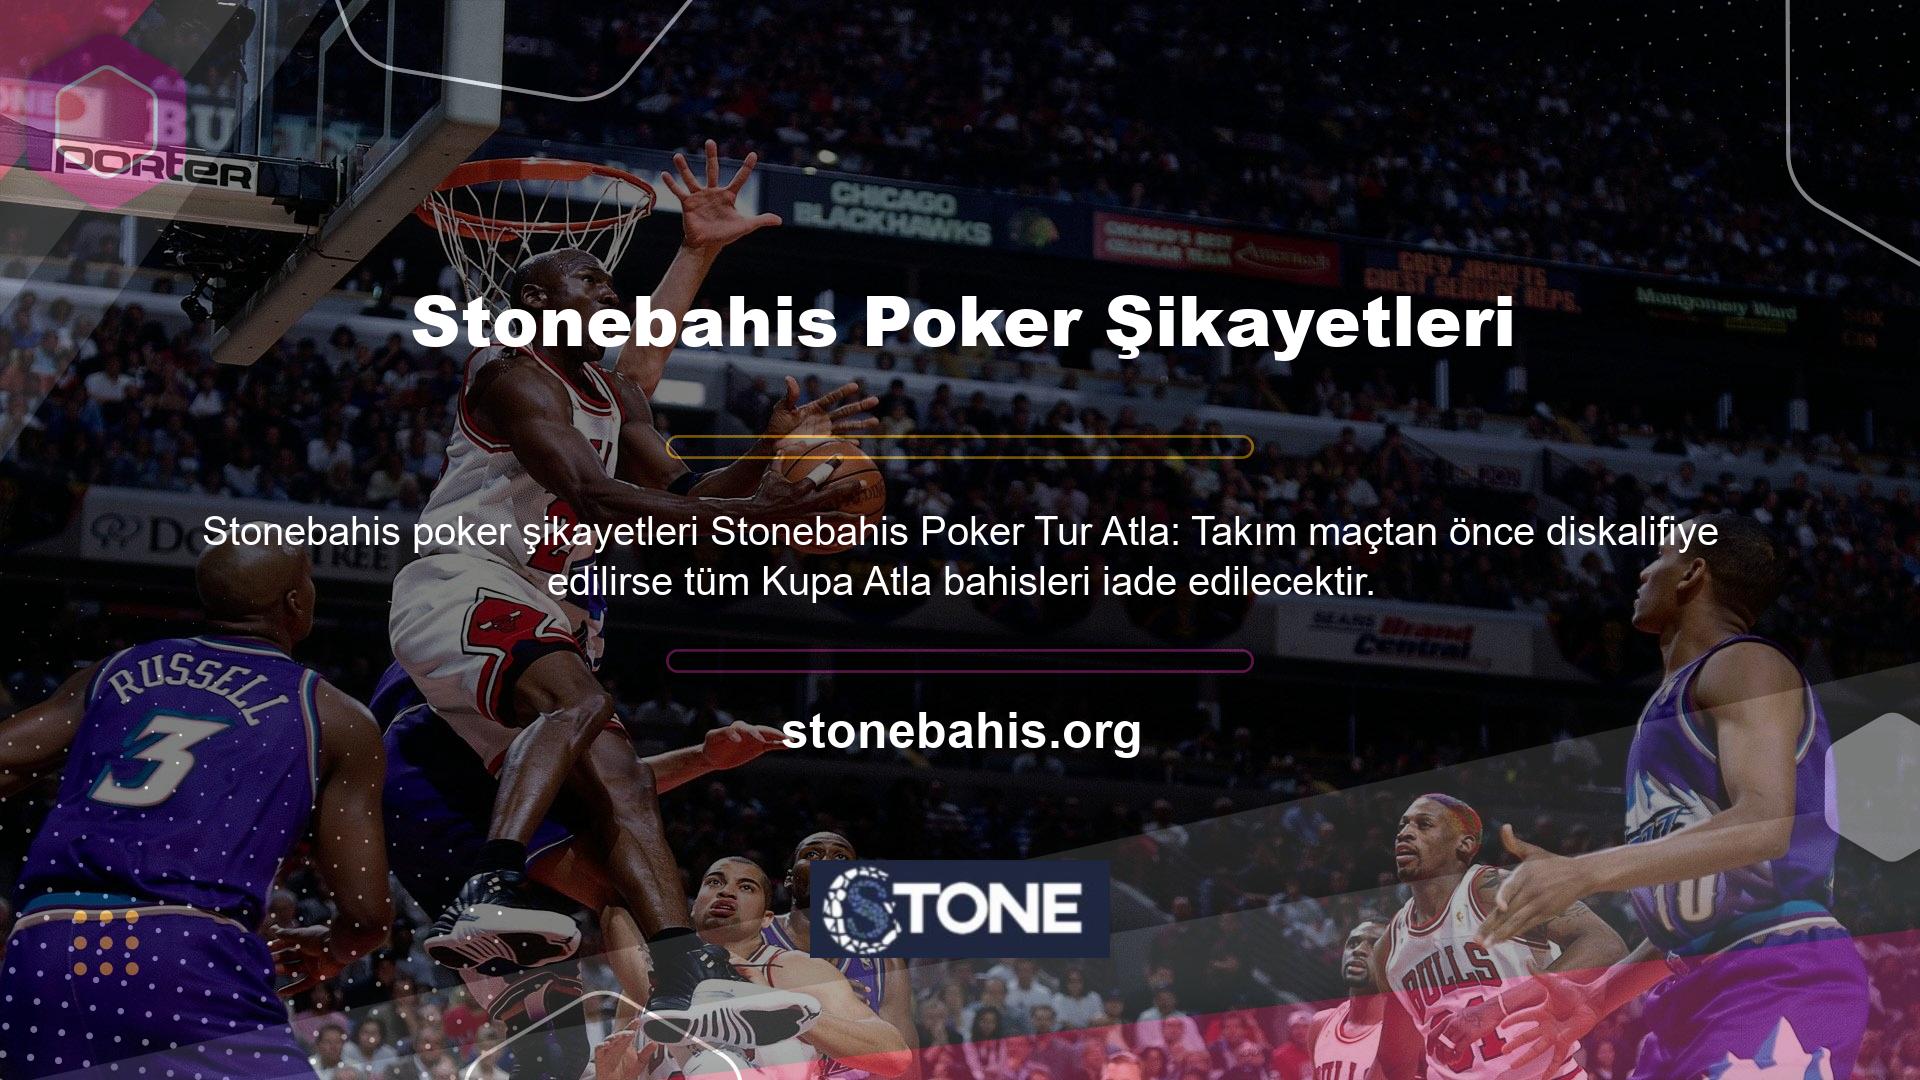 Stonebahis bahis sitesi, poker oyuncularına poker sınıfı ödülleri sunuyor